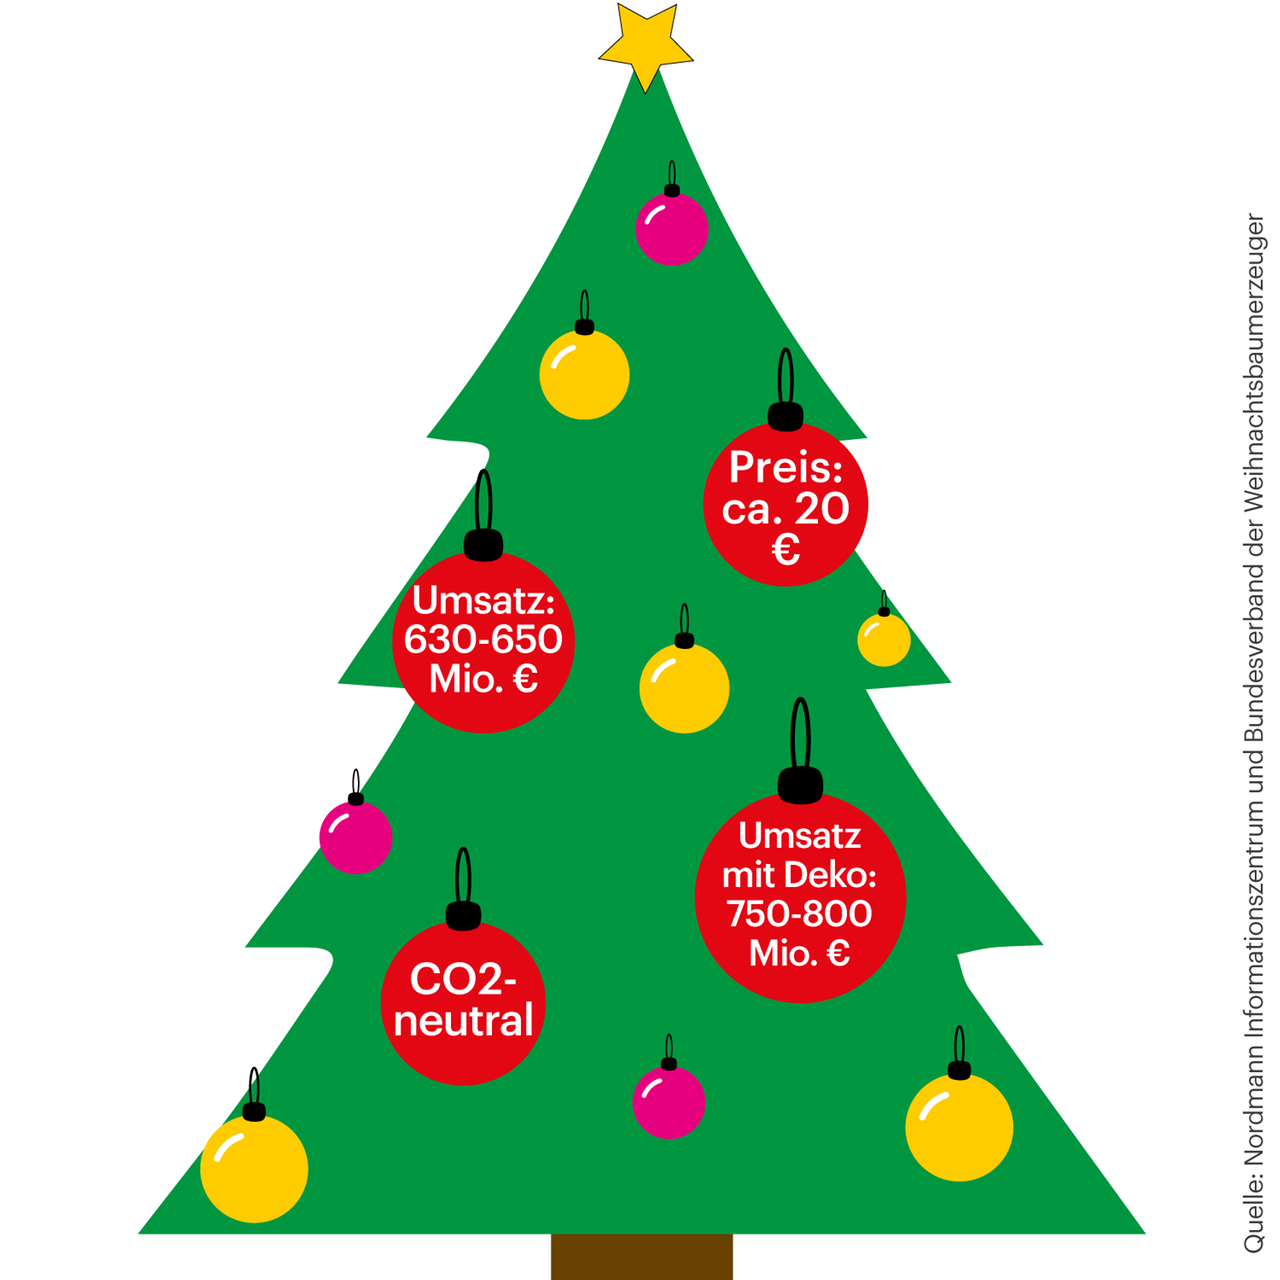 Der grafische Weihnachtsbaum ist mit Kugeln geschmückt, die Informationen beinhalten. Etwa den jährlichen Umsatz von 630 bis 650 Millionen Euro.